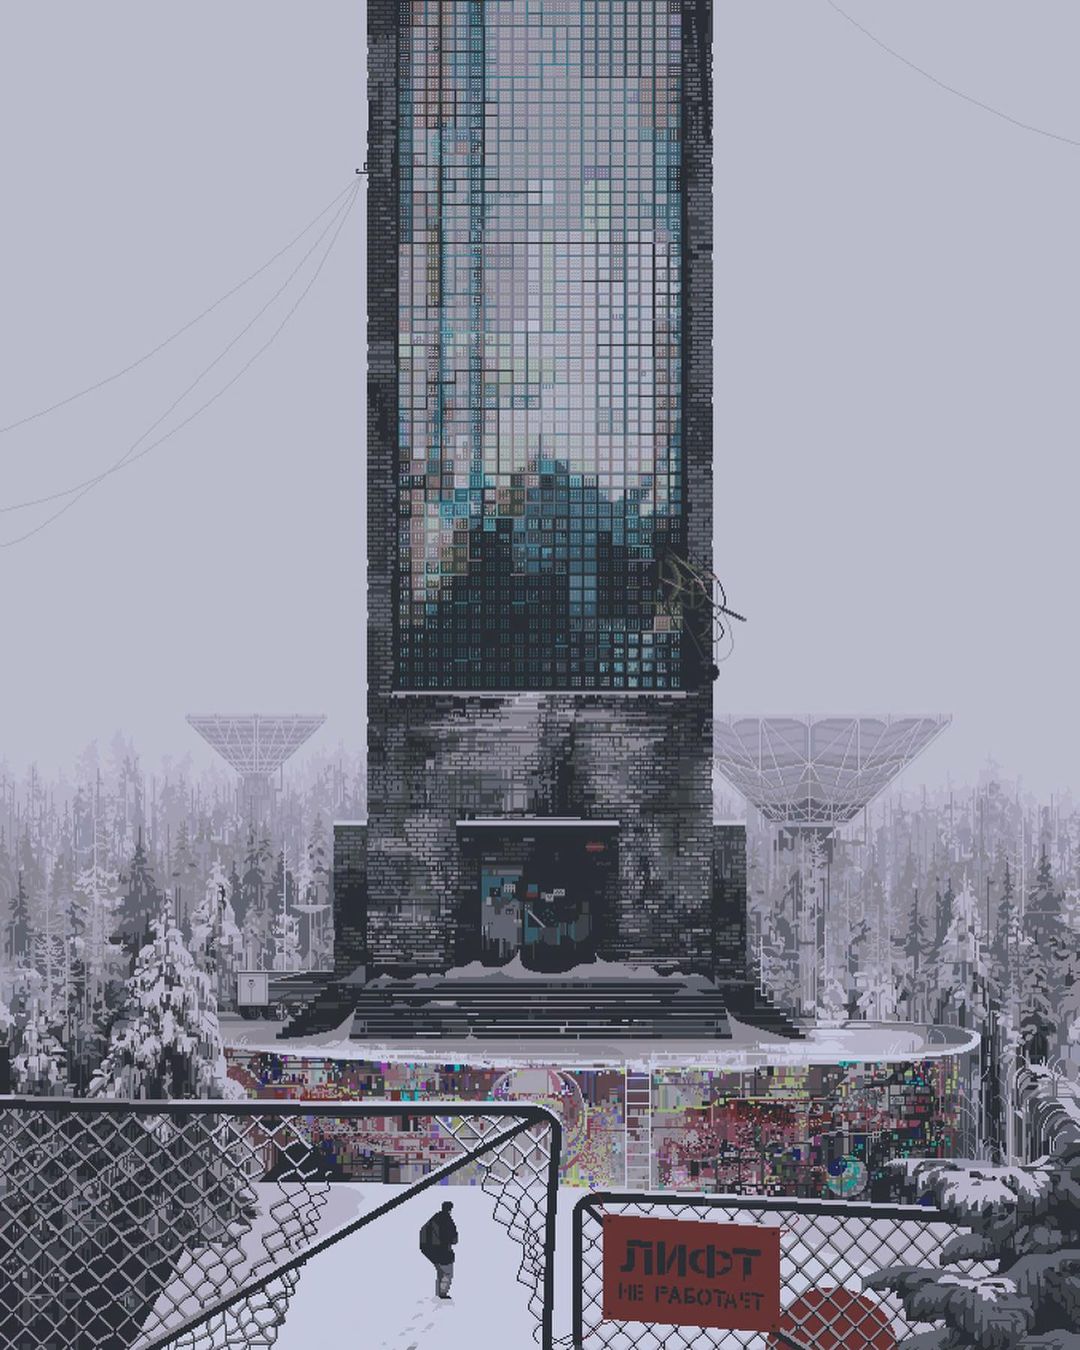 Dibujo de 6VCR en PIXEL ART de un EDIFICIO abandonado en rusia